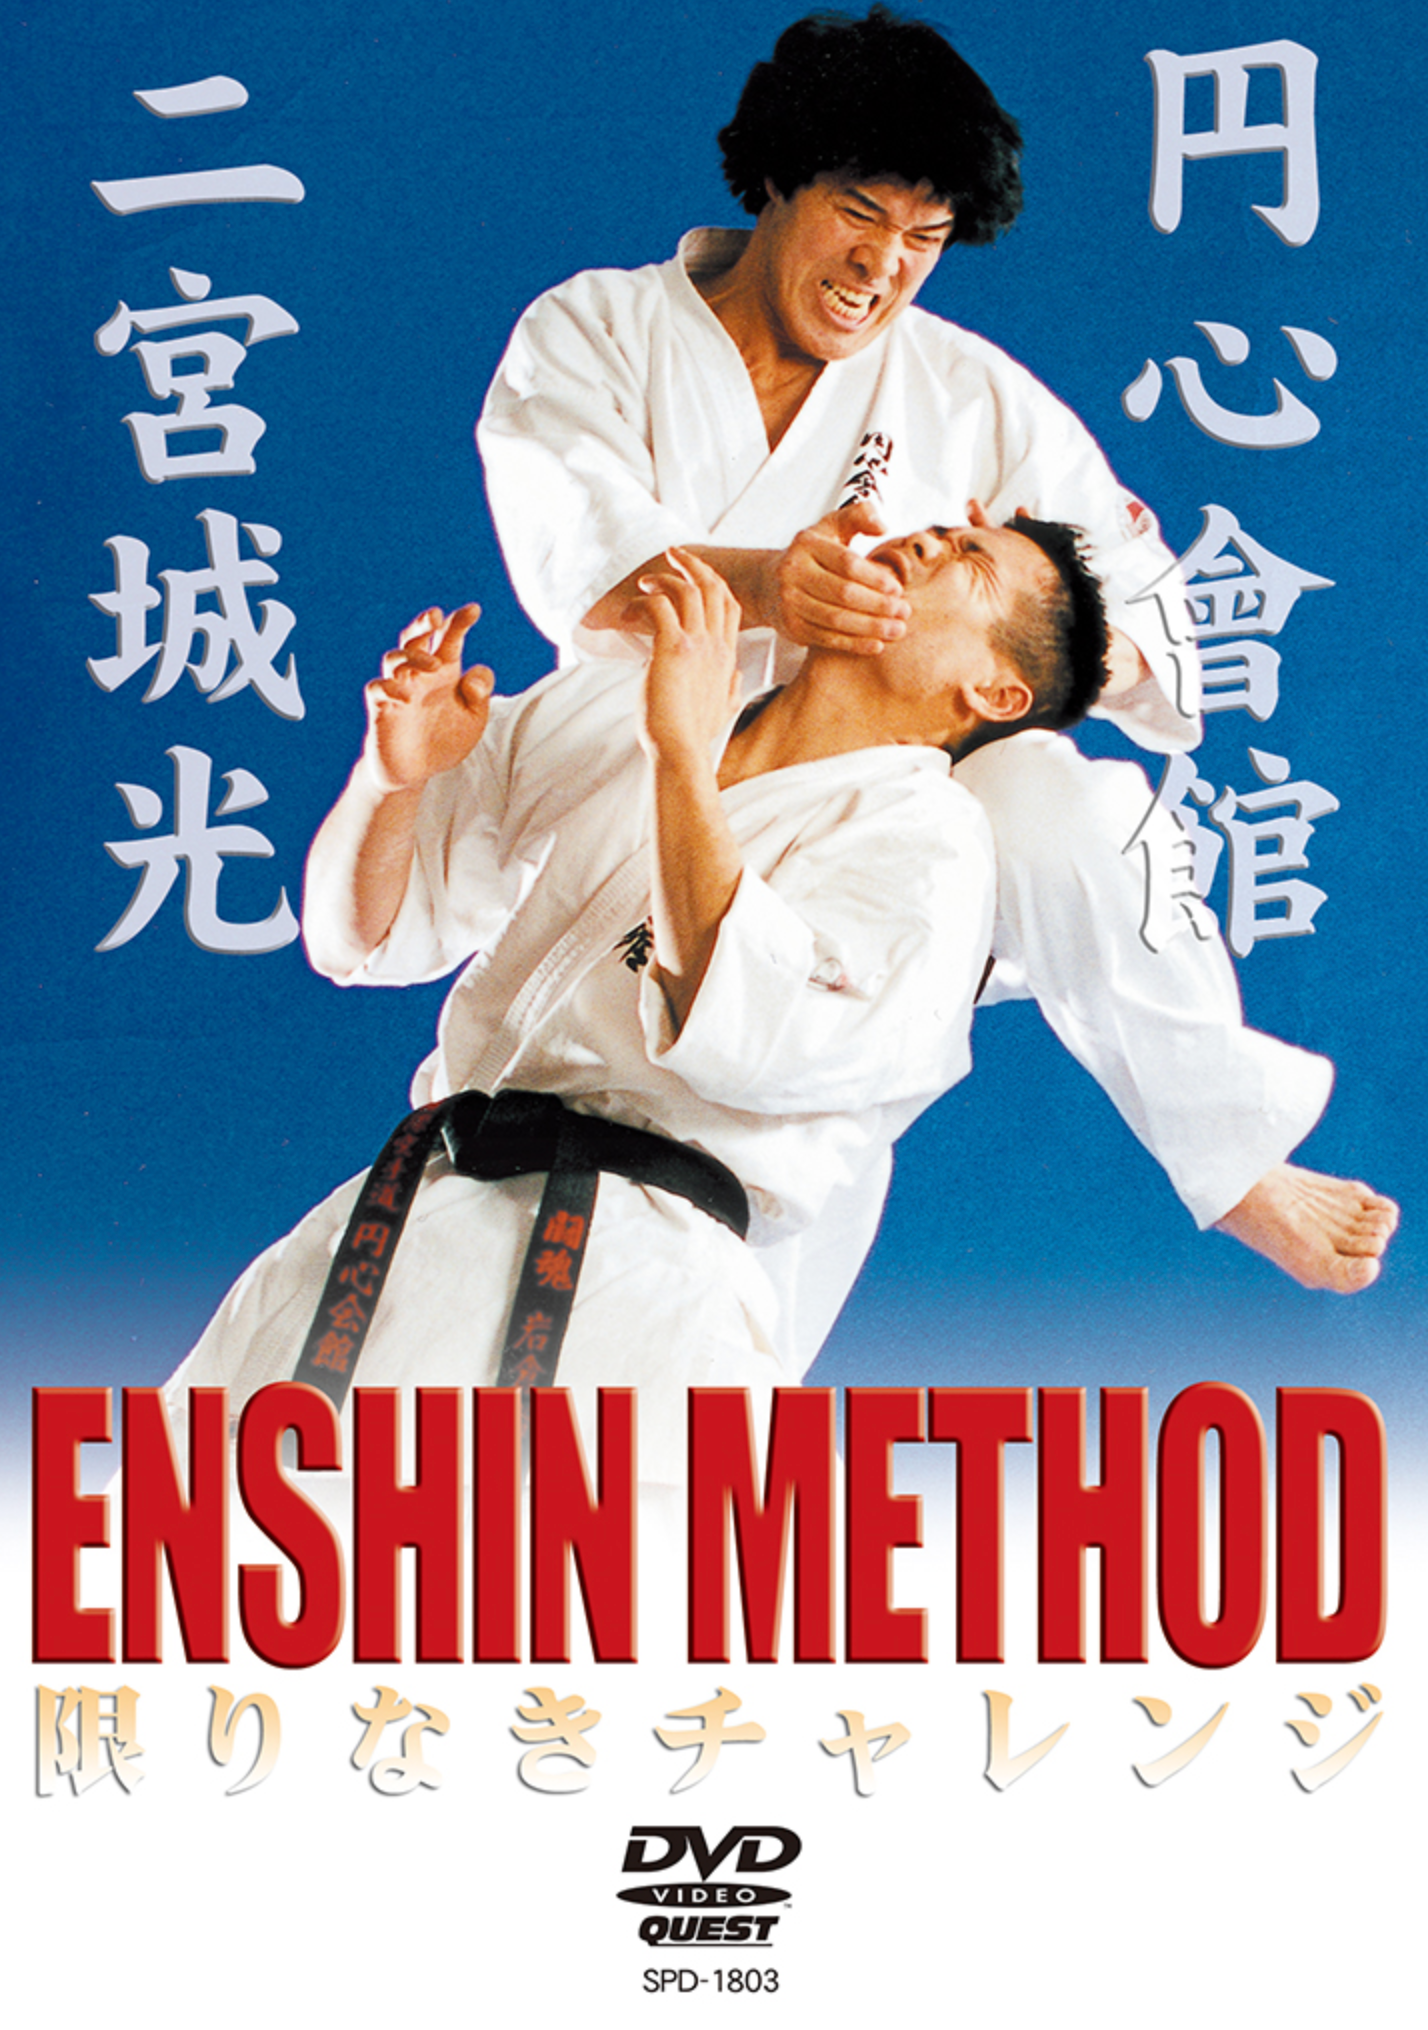 Enshin Method Vol 1 DVD by Joko Ninomiya - Budovideos Inc